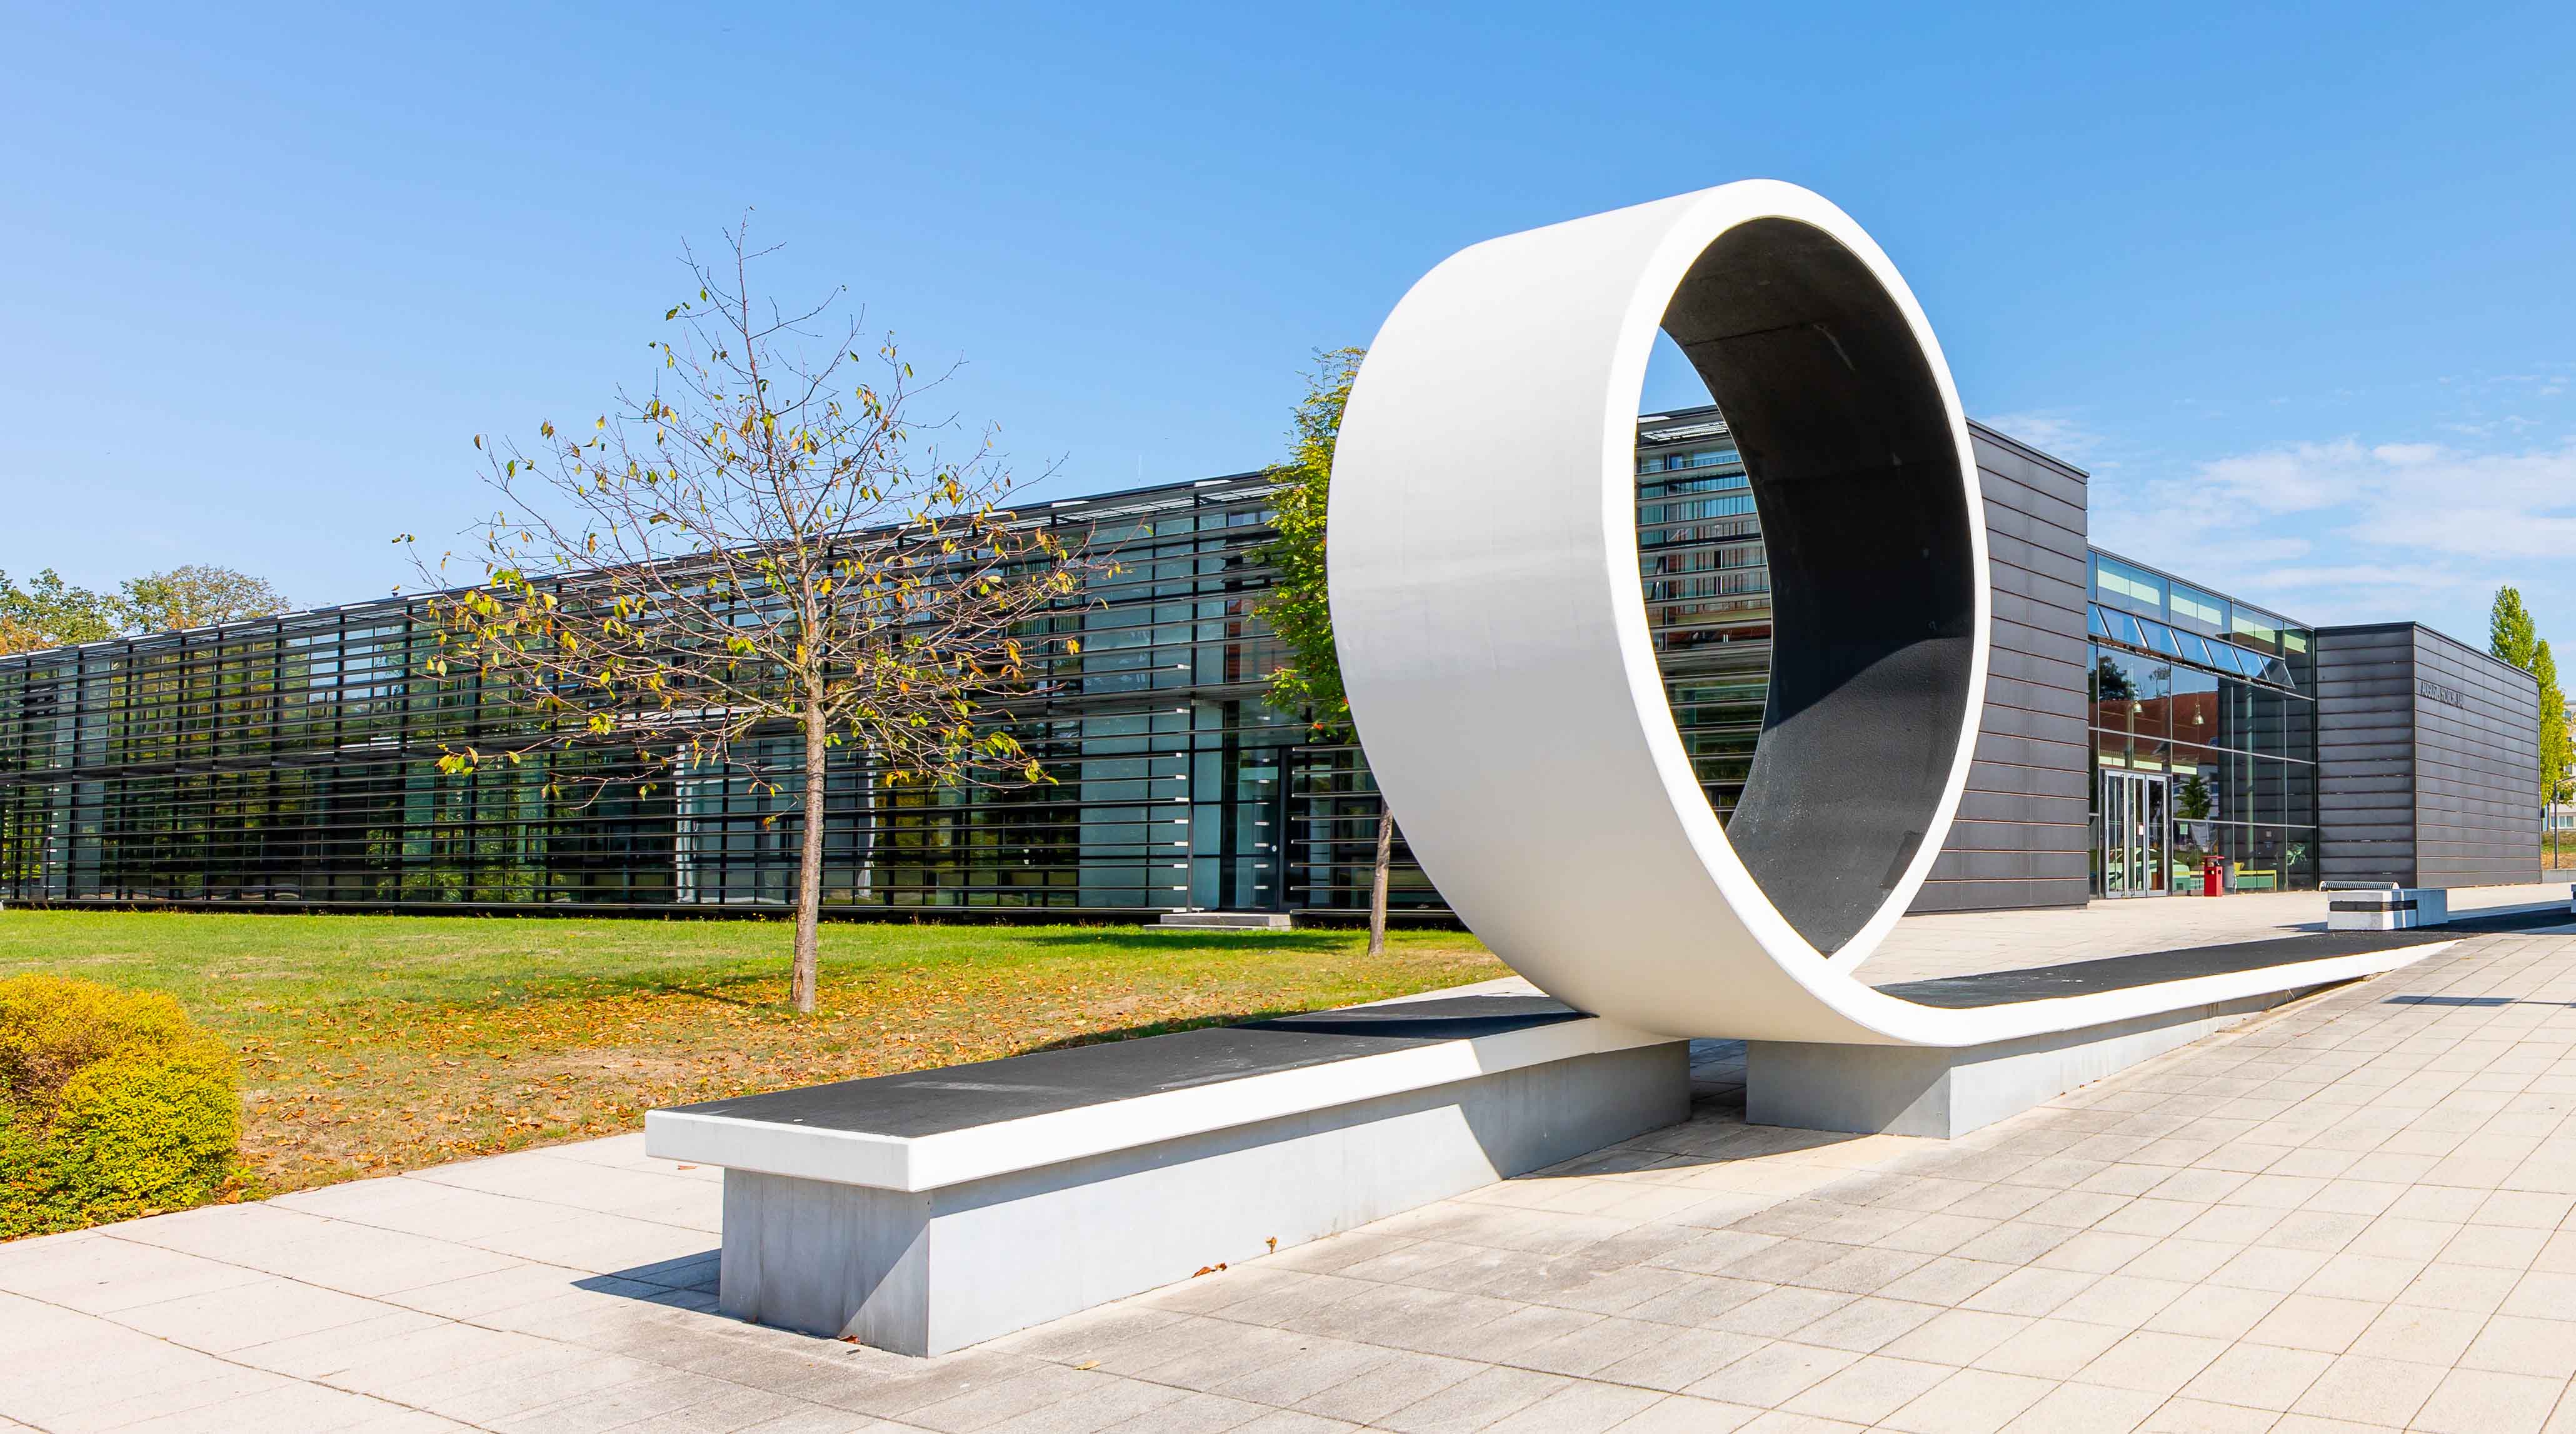 Foto: Campus Scheffelberg mit Blick auf das Laborgebäude Kraftfahrzeugtechnik / August-Horch-Bau. Davor eine Betonskulptur welche einen Looping zeigt.